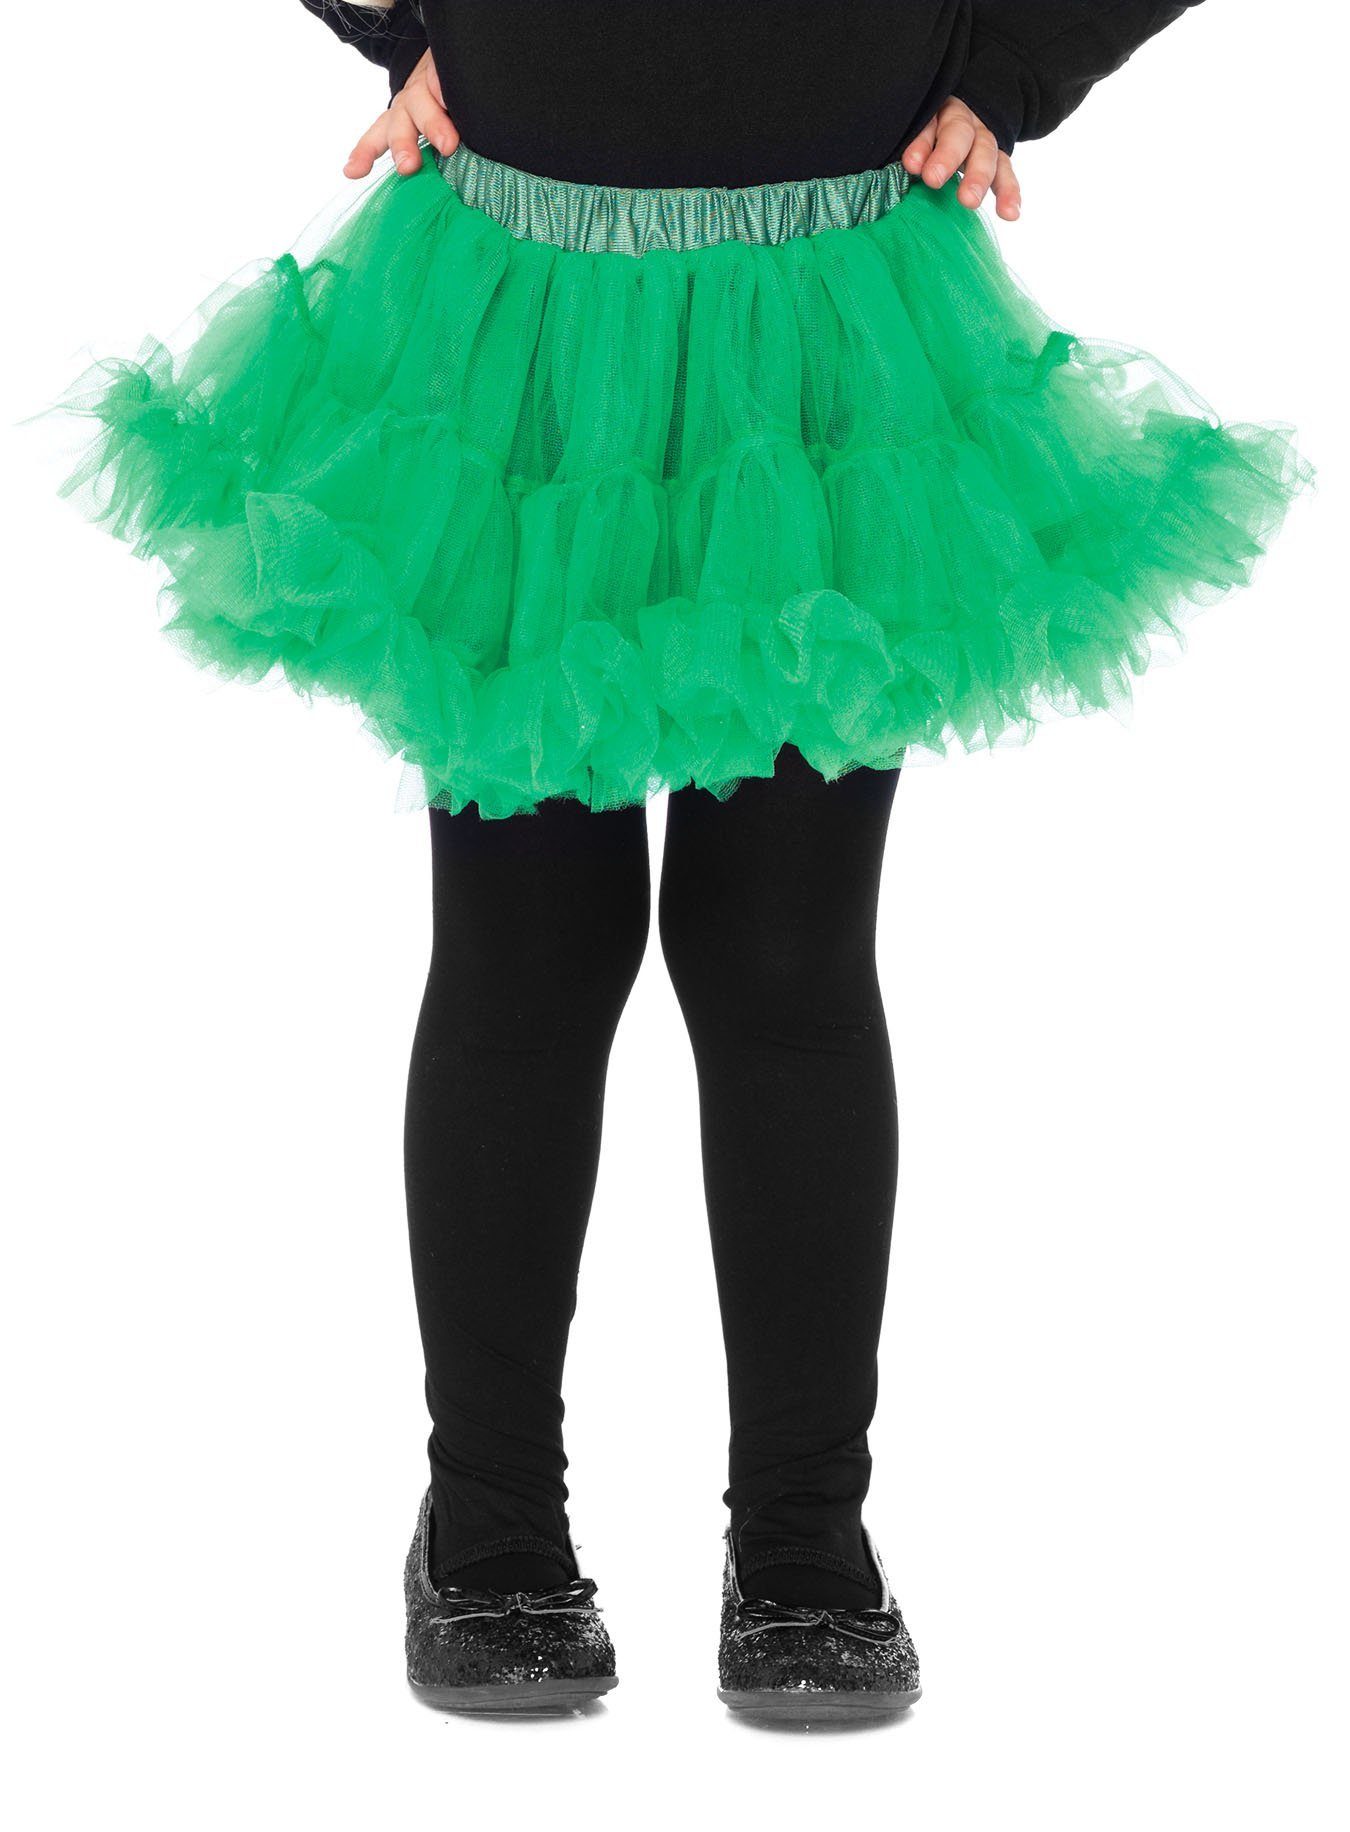 Leg Avenue Kostüm Petticoat für Kinder kurz grün, Farbenfrohes Kostümteil für zahlreiche Kostümkombinationen